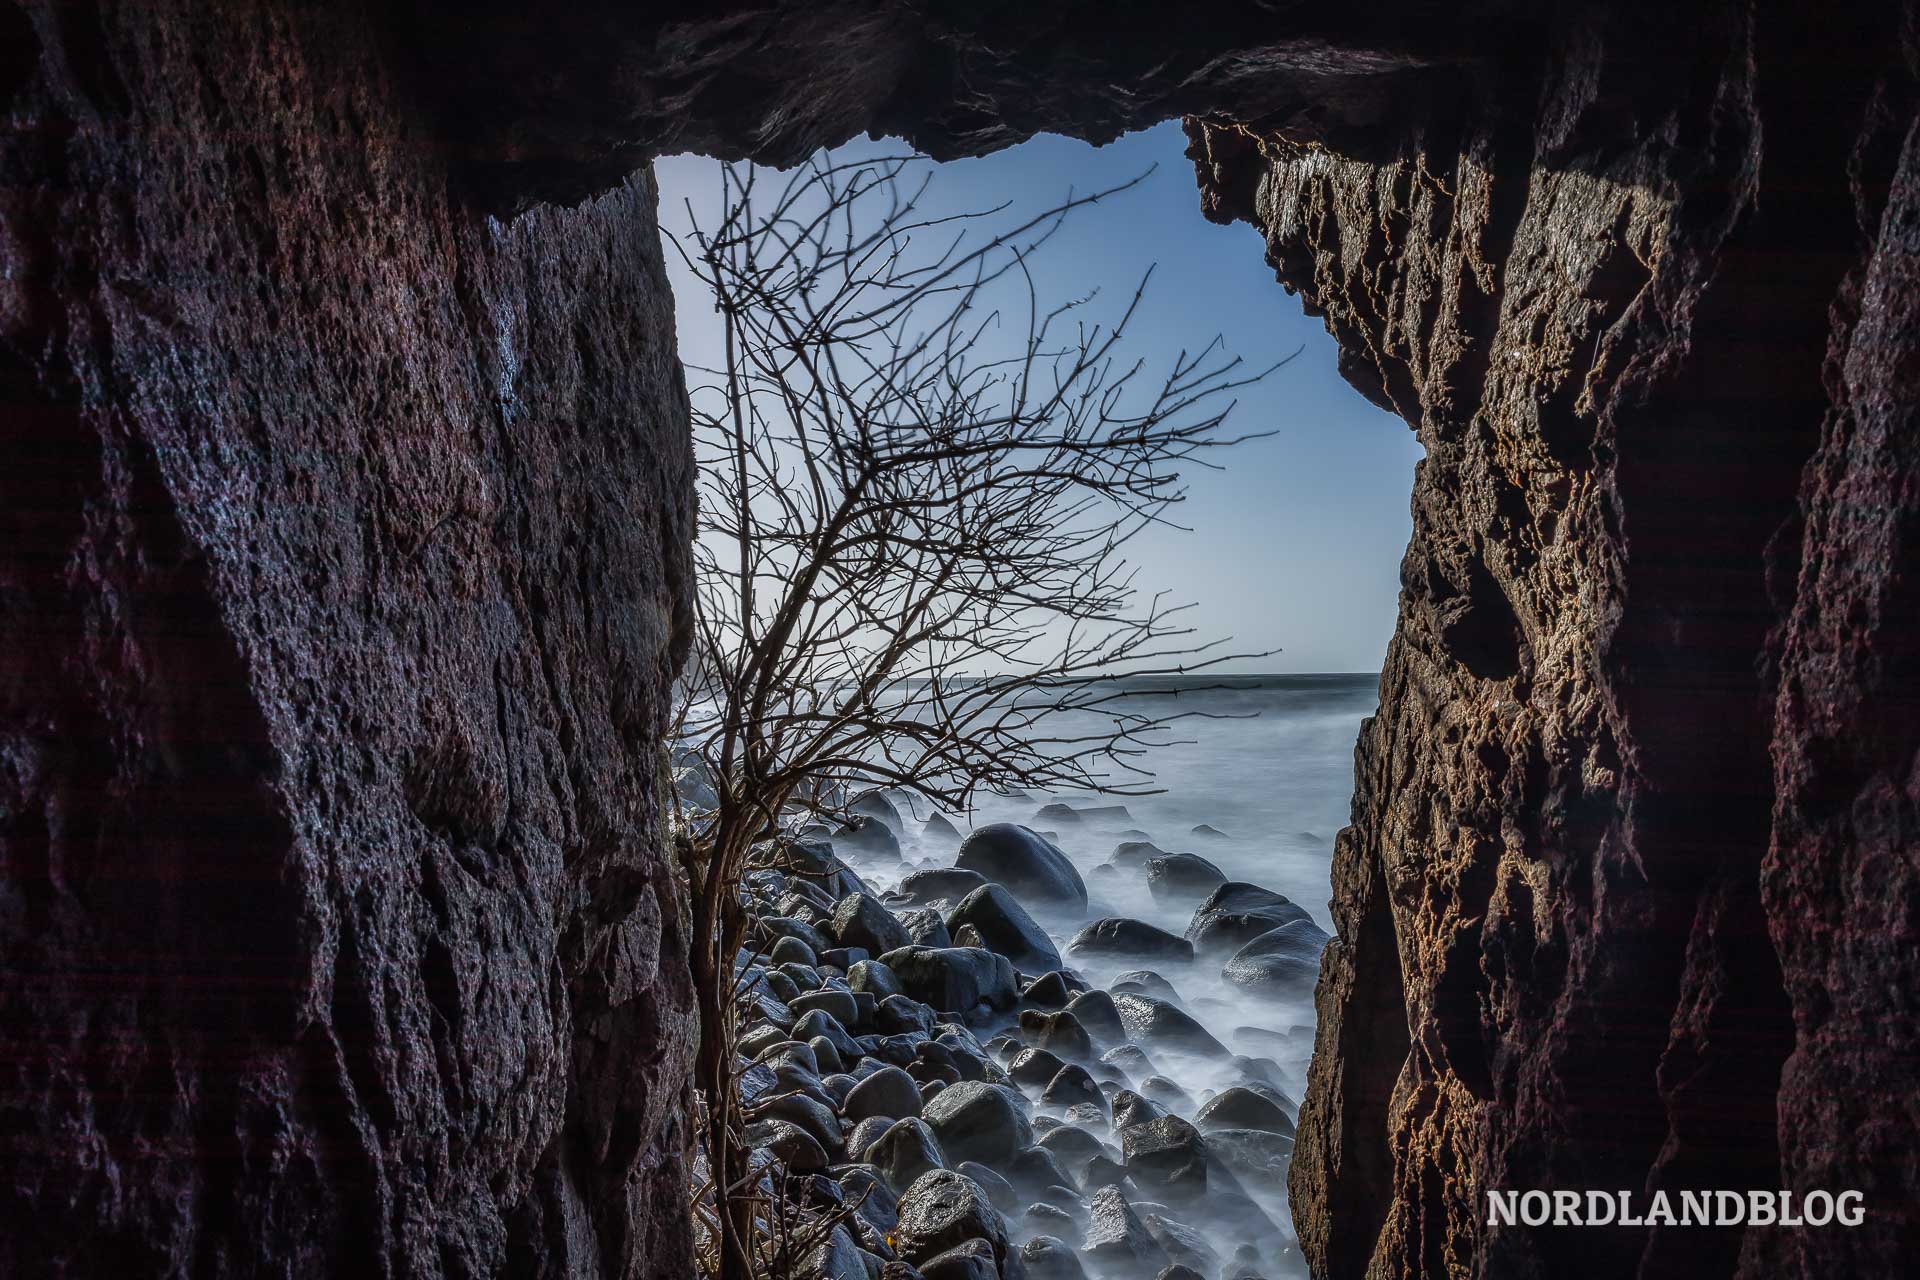 Blick aus einer der Grotten von Jons Kapel auf der Insel Bornholm in der Ostsee